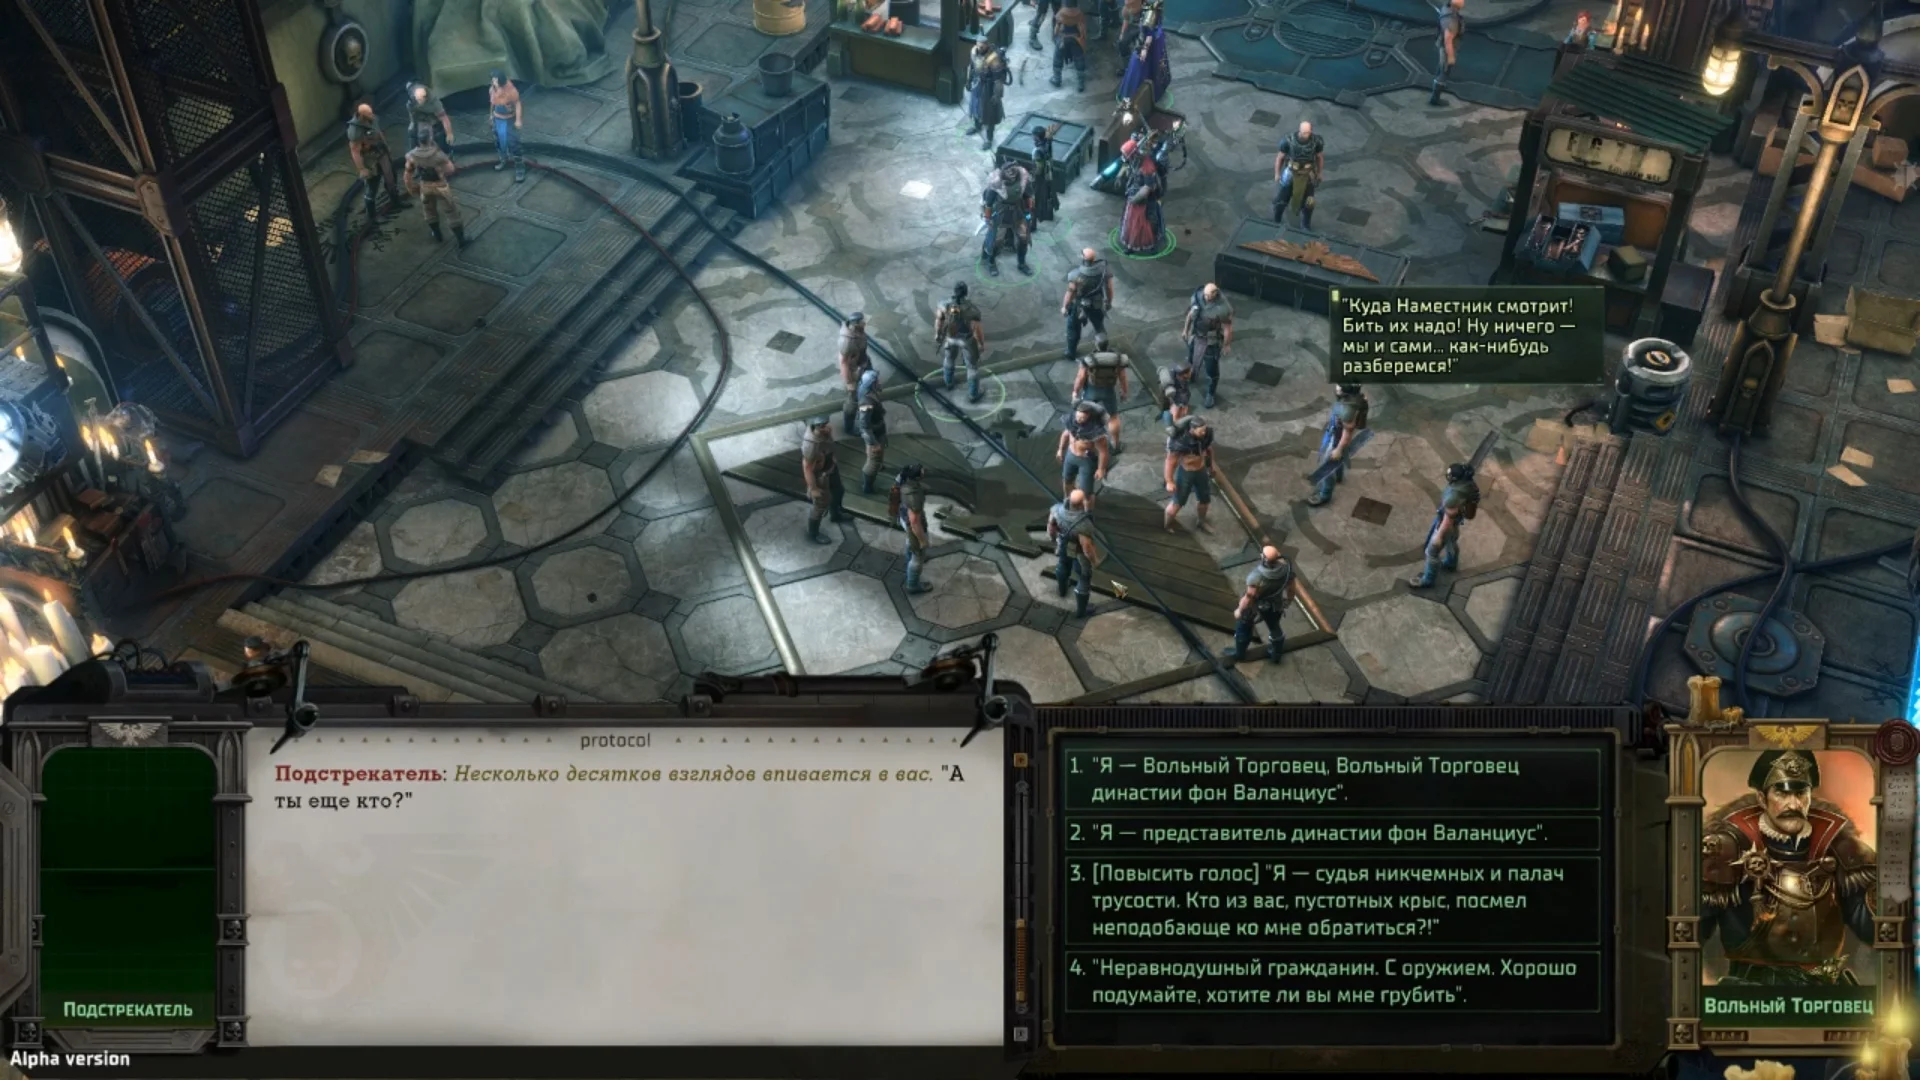 Поиграли в Warhammer 40,000: Rogue Trader и делимся впечатлениями от альфа-версии ролевой игры - фото 3